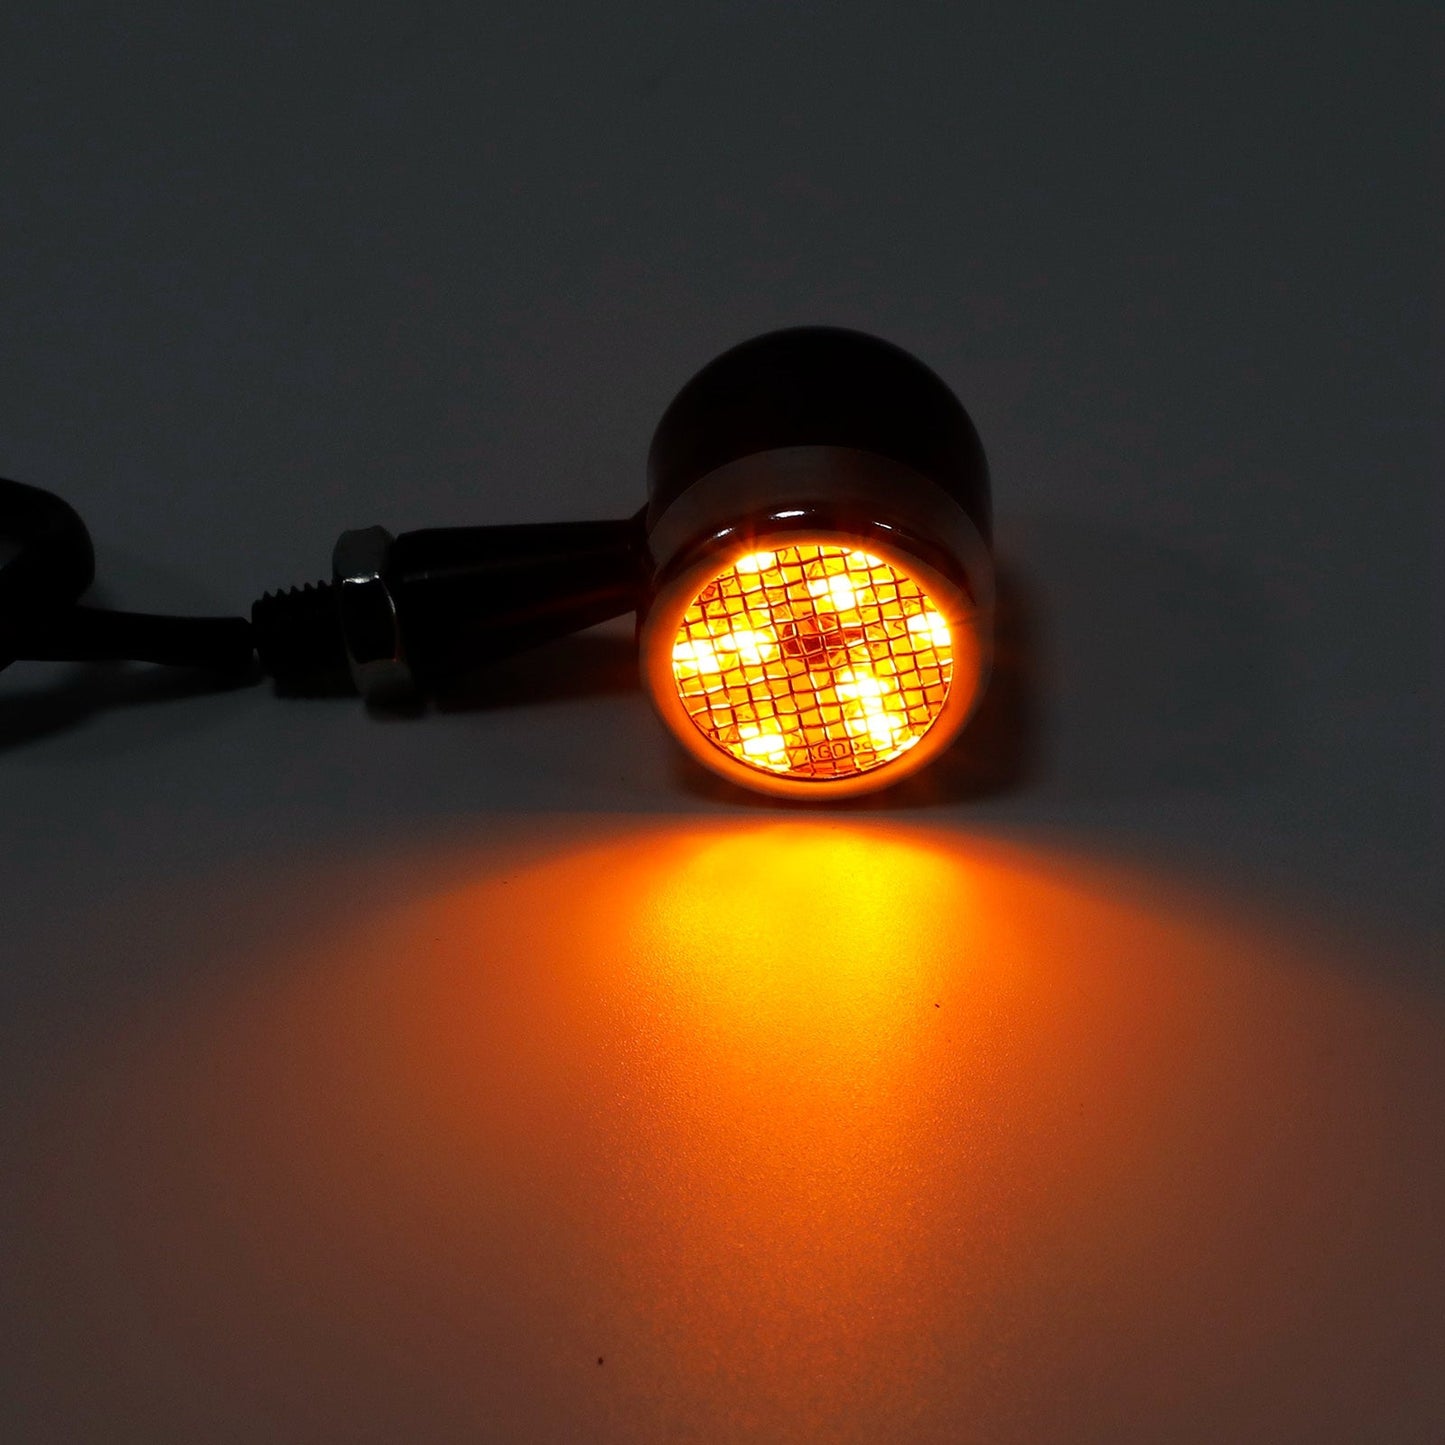 Universel 10MM moto LED clignotant indicateur feu stop feu 12V M10